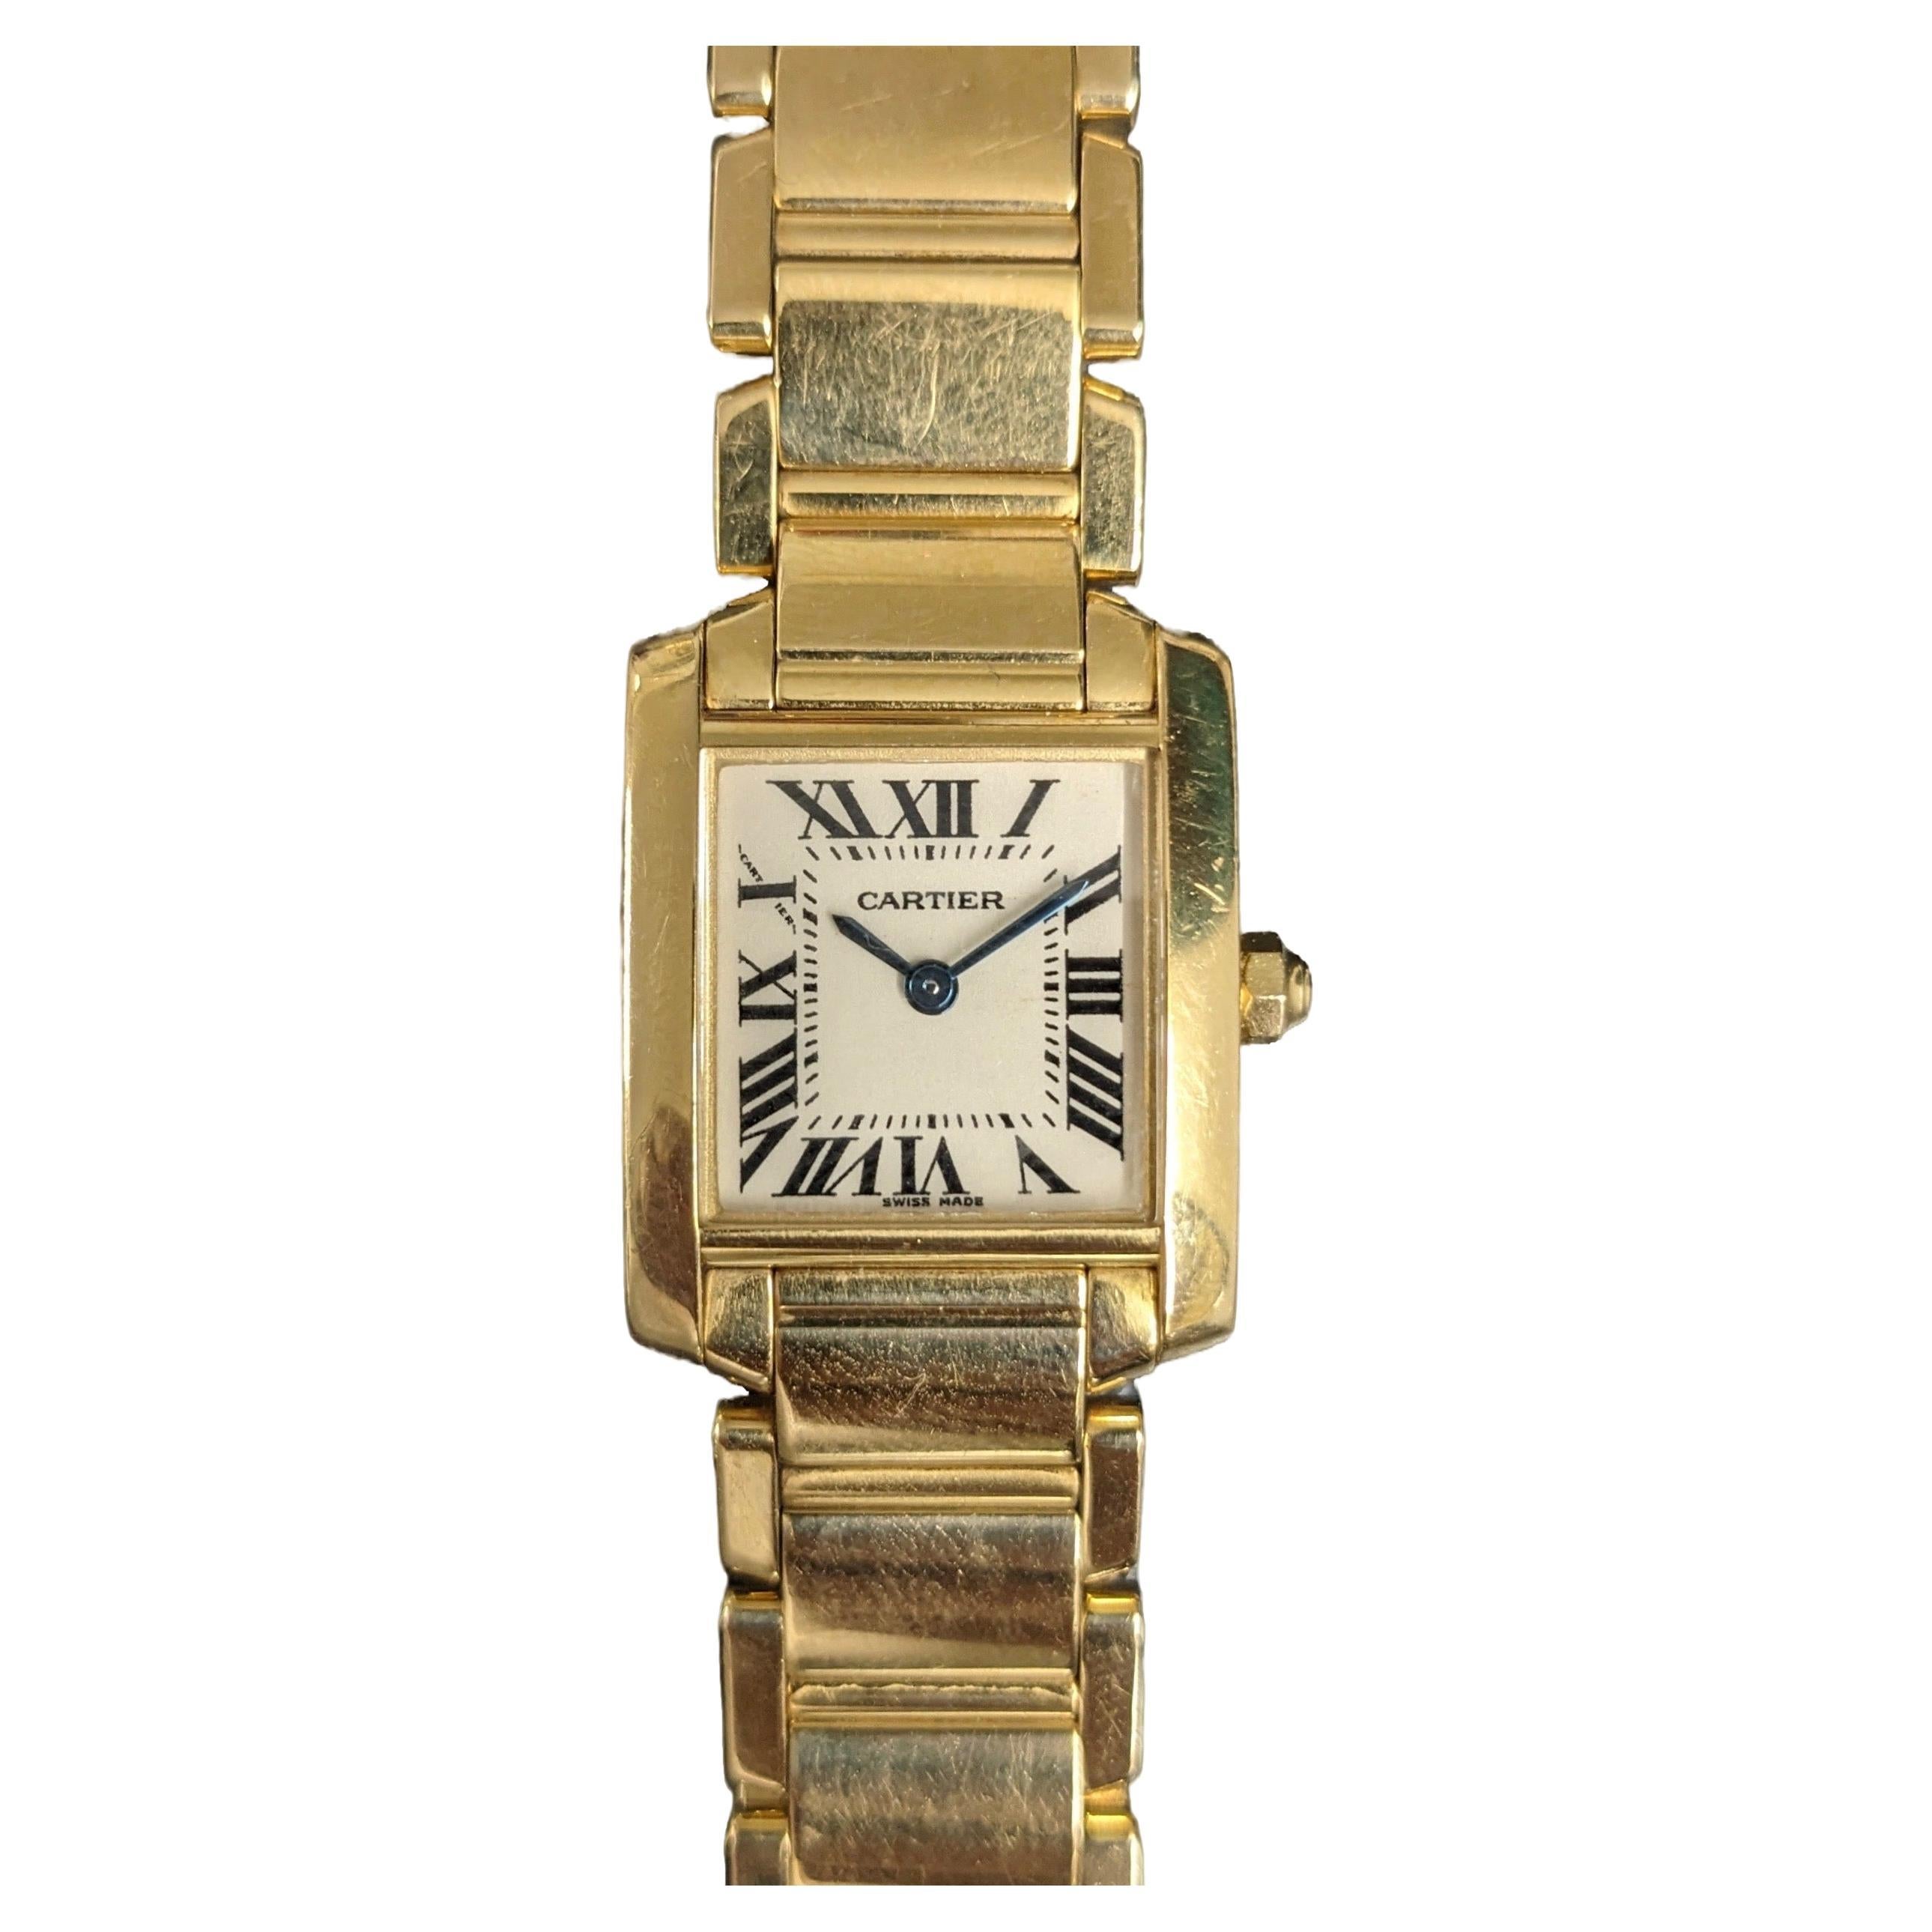 Reloj Cartier modelo Tank Francaise de oro amarillo de 18 quilates referencia 2385